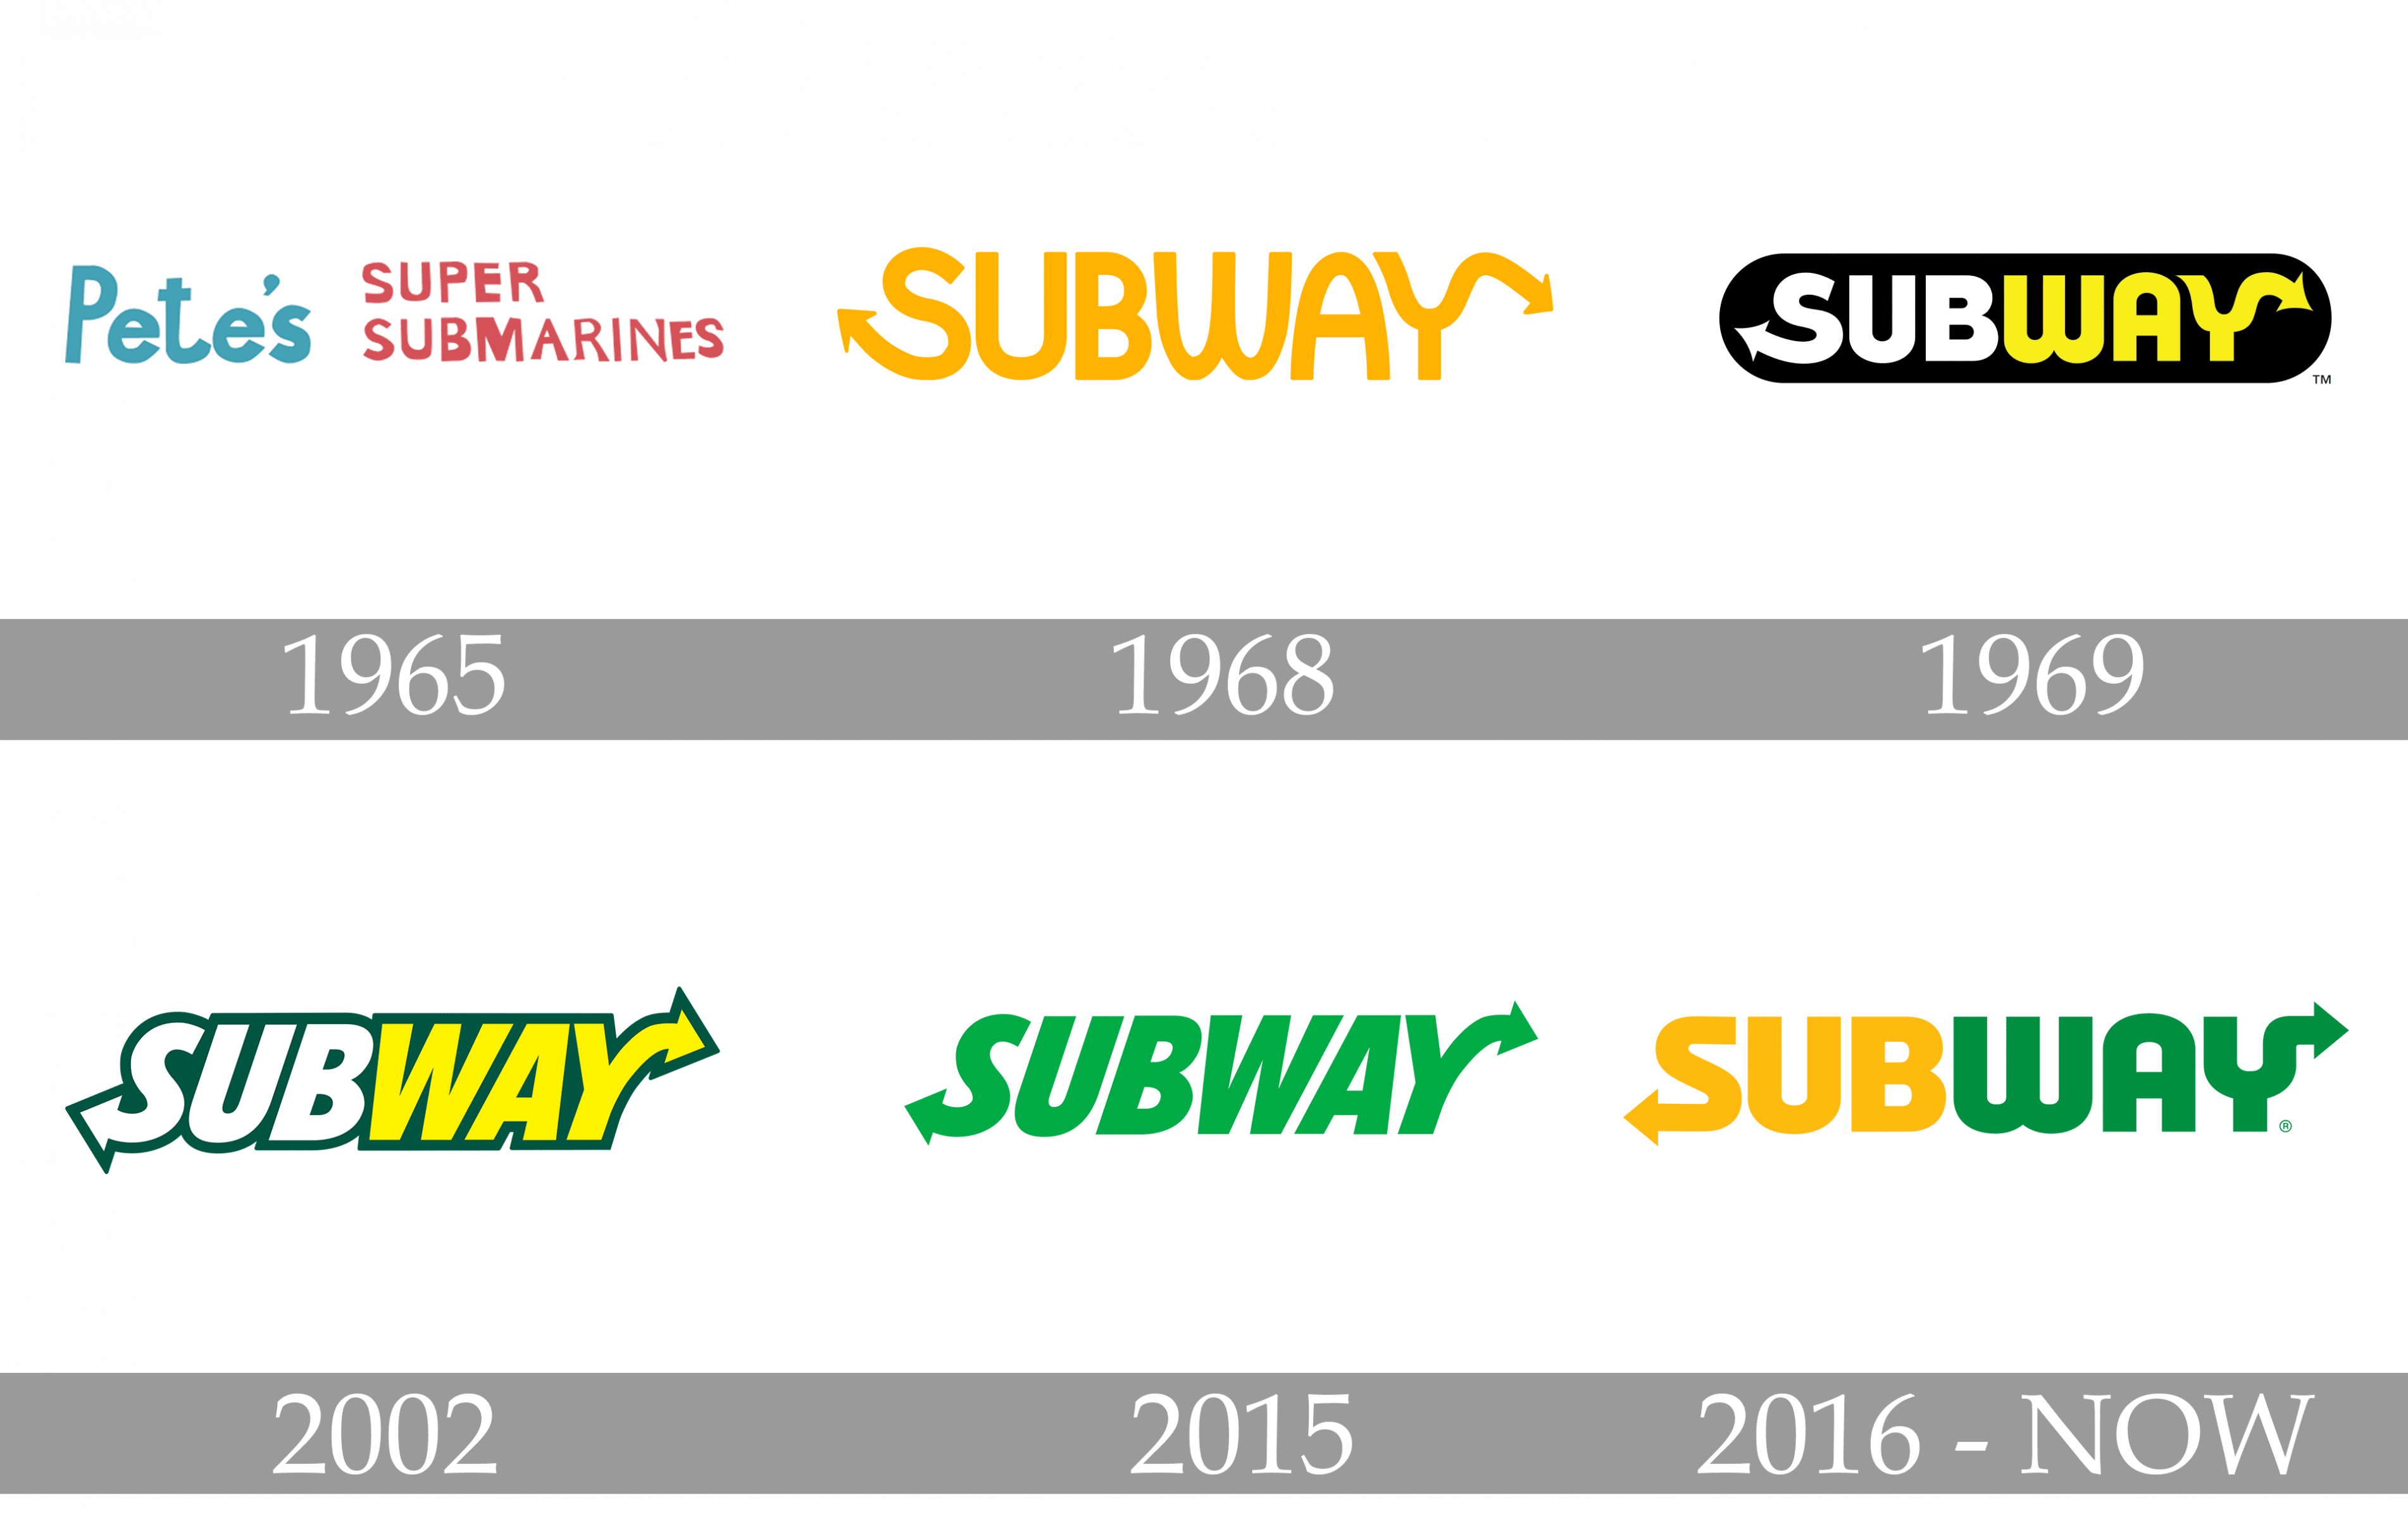 Subway logo history